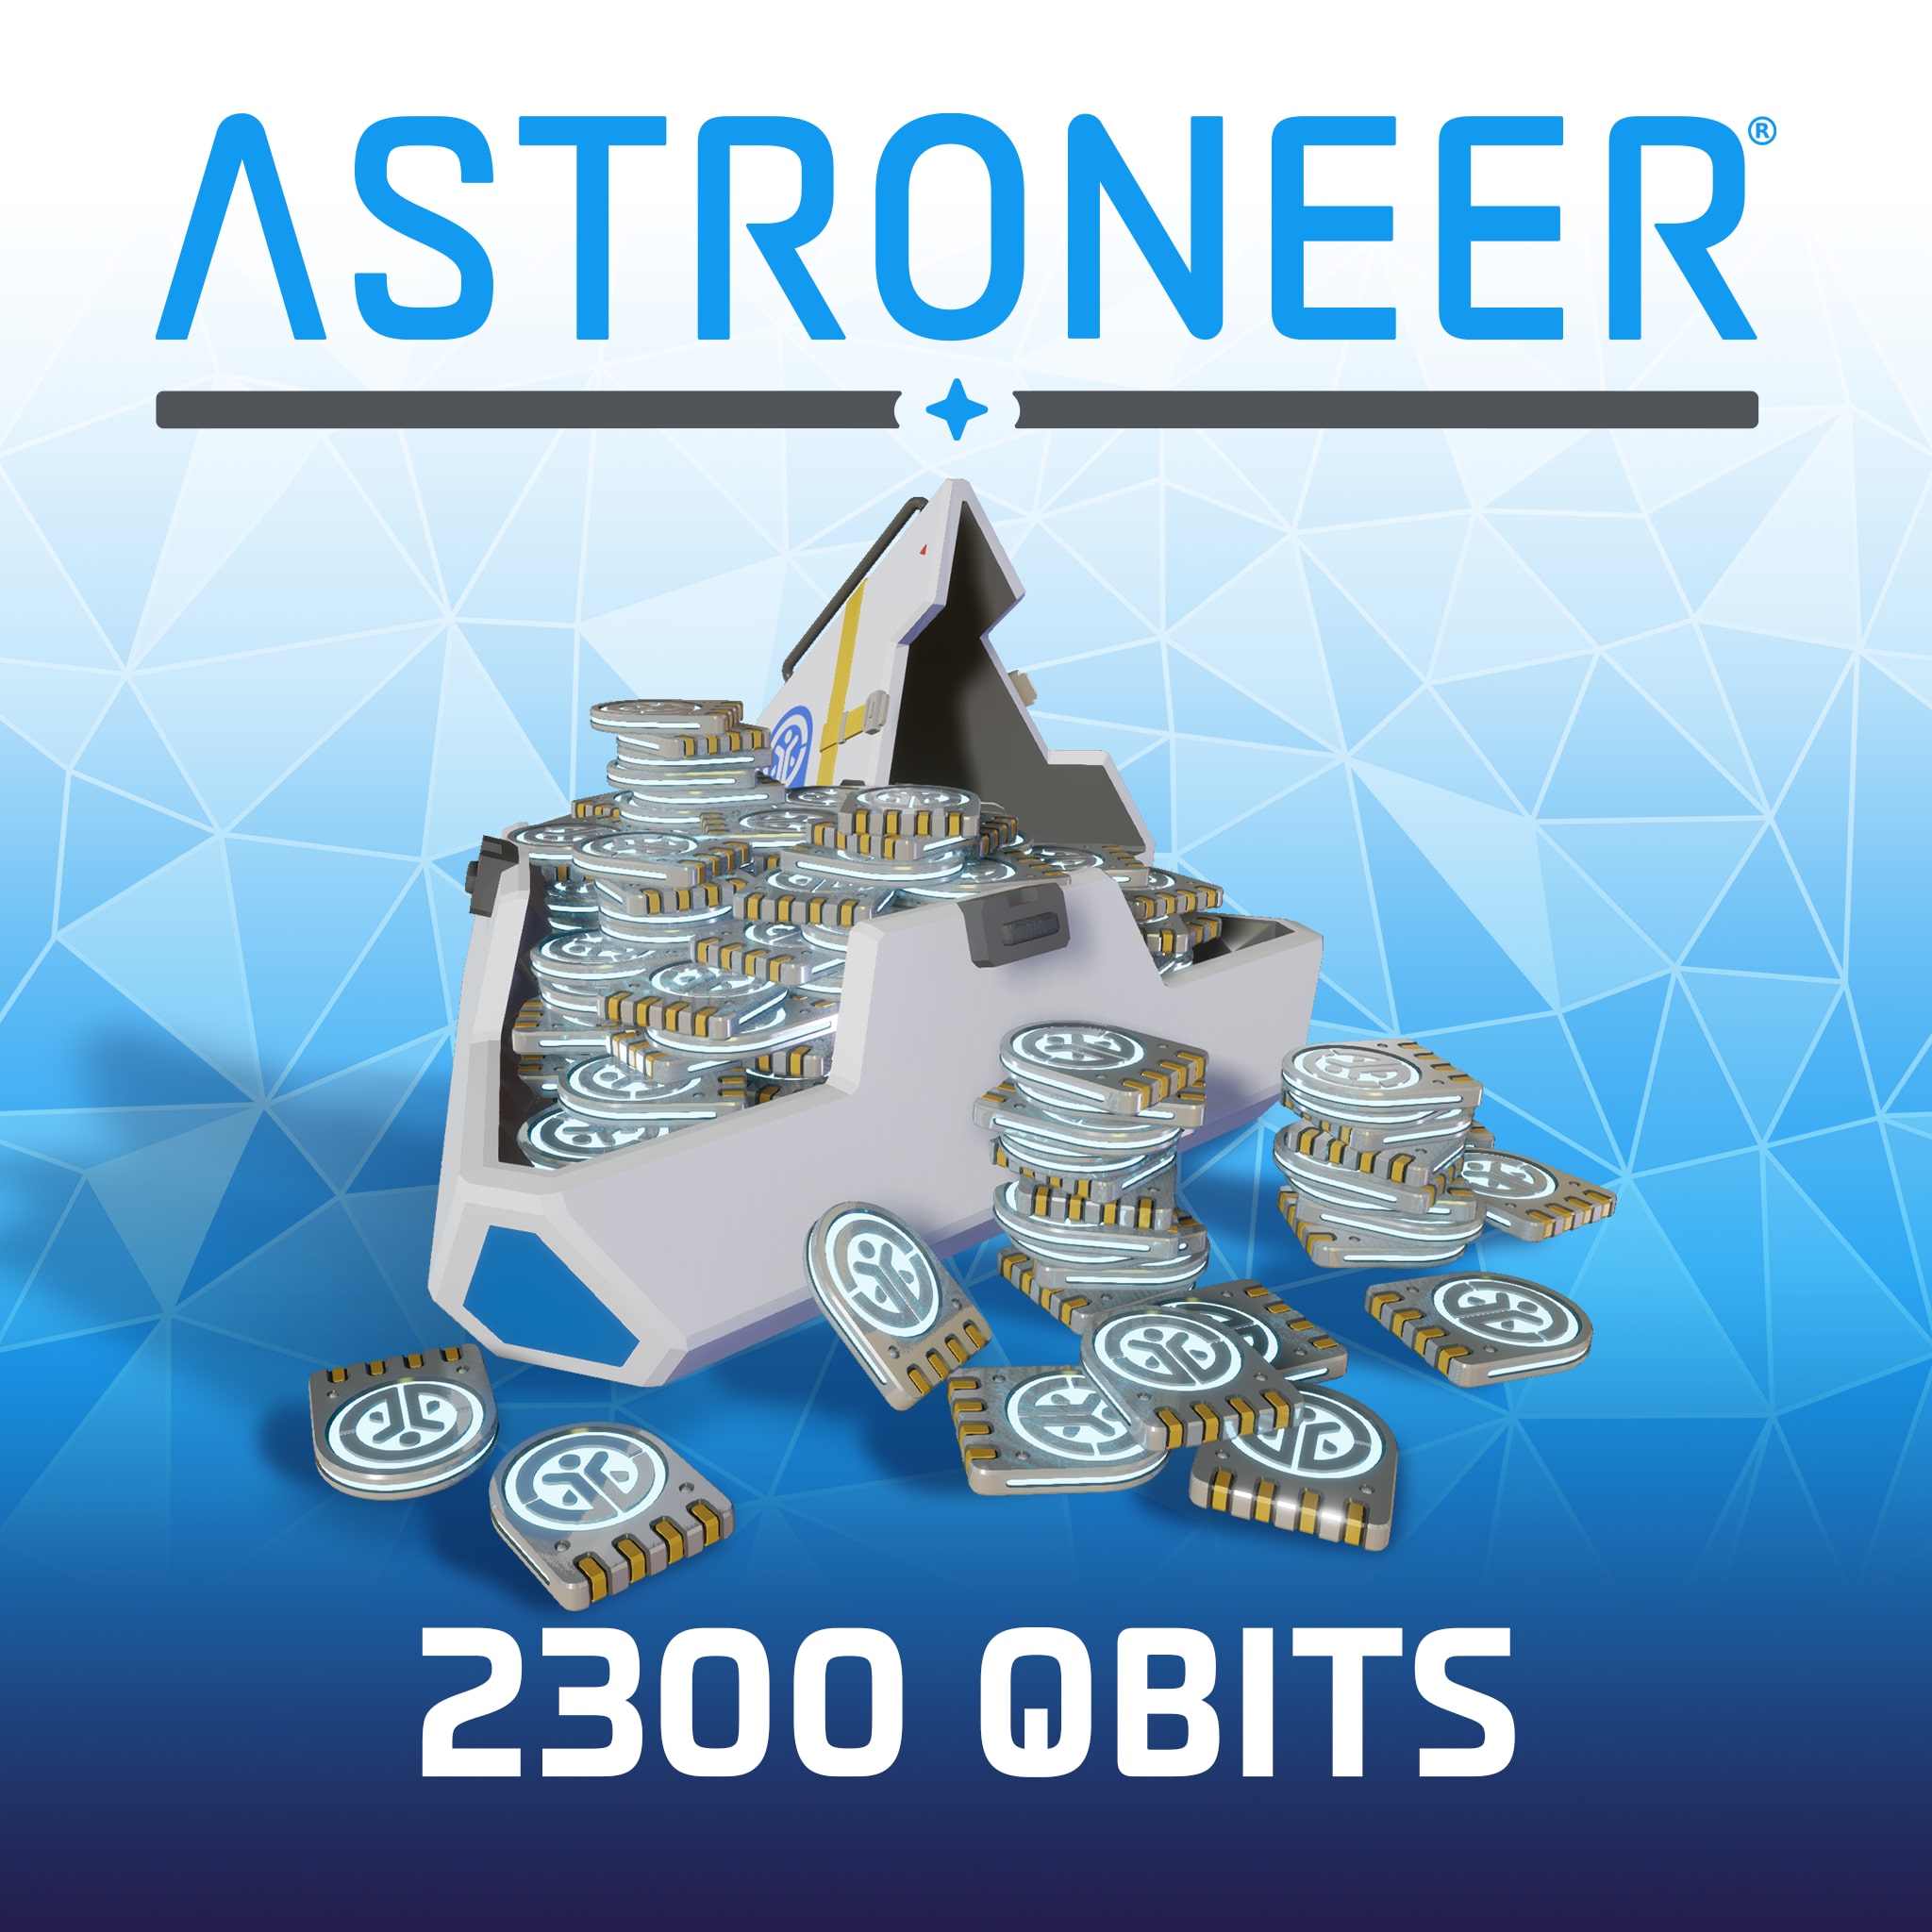 Astroneer -アストロニーア- 2300 QBIT